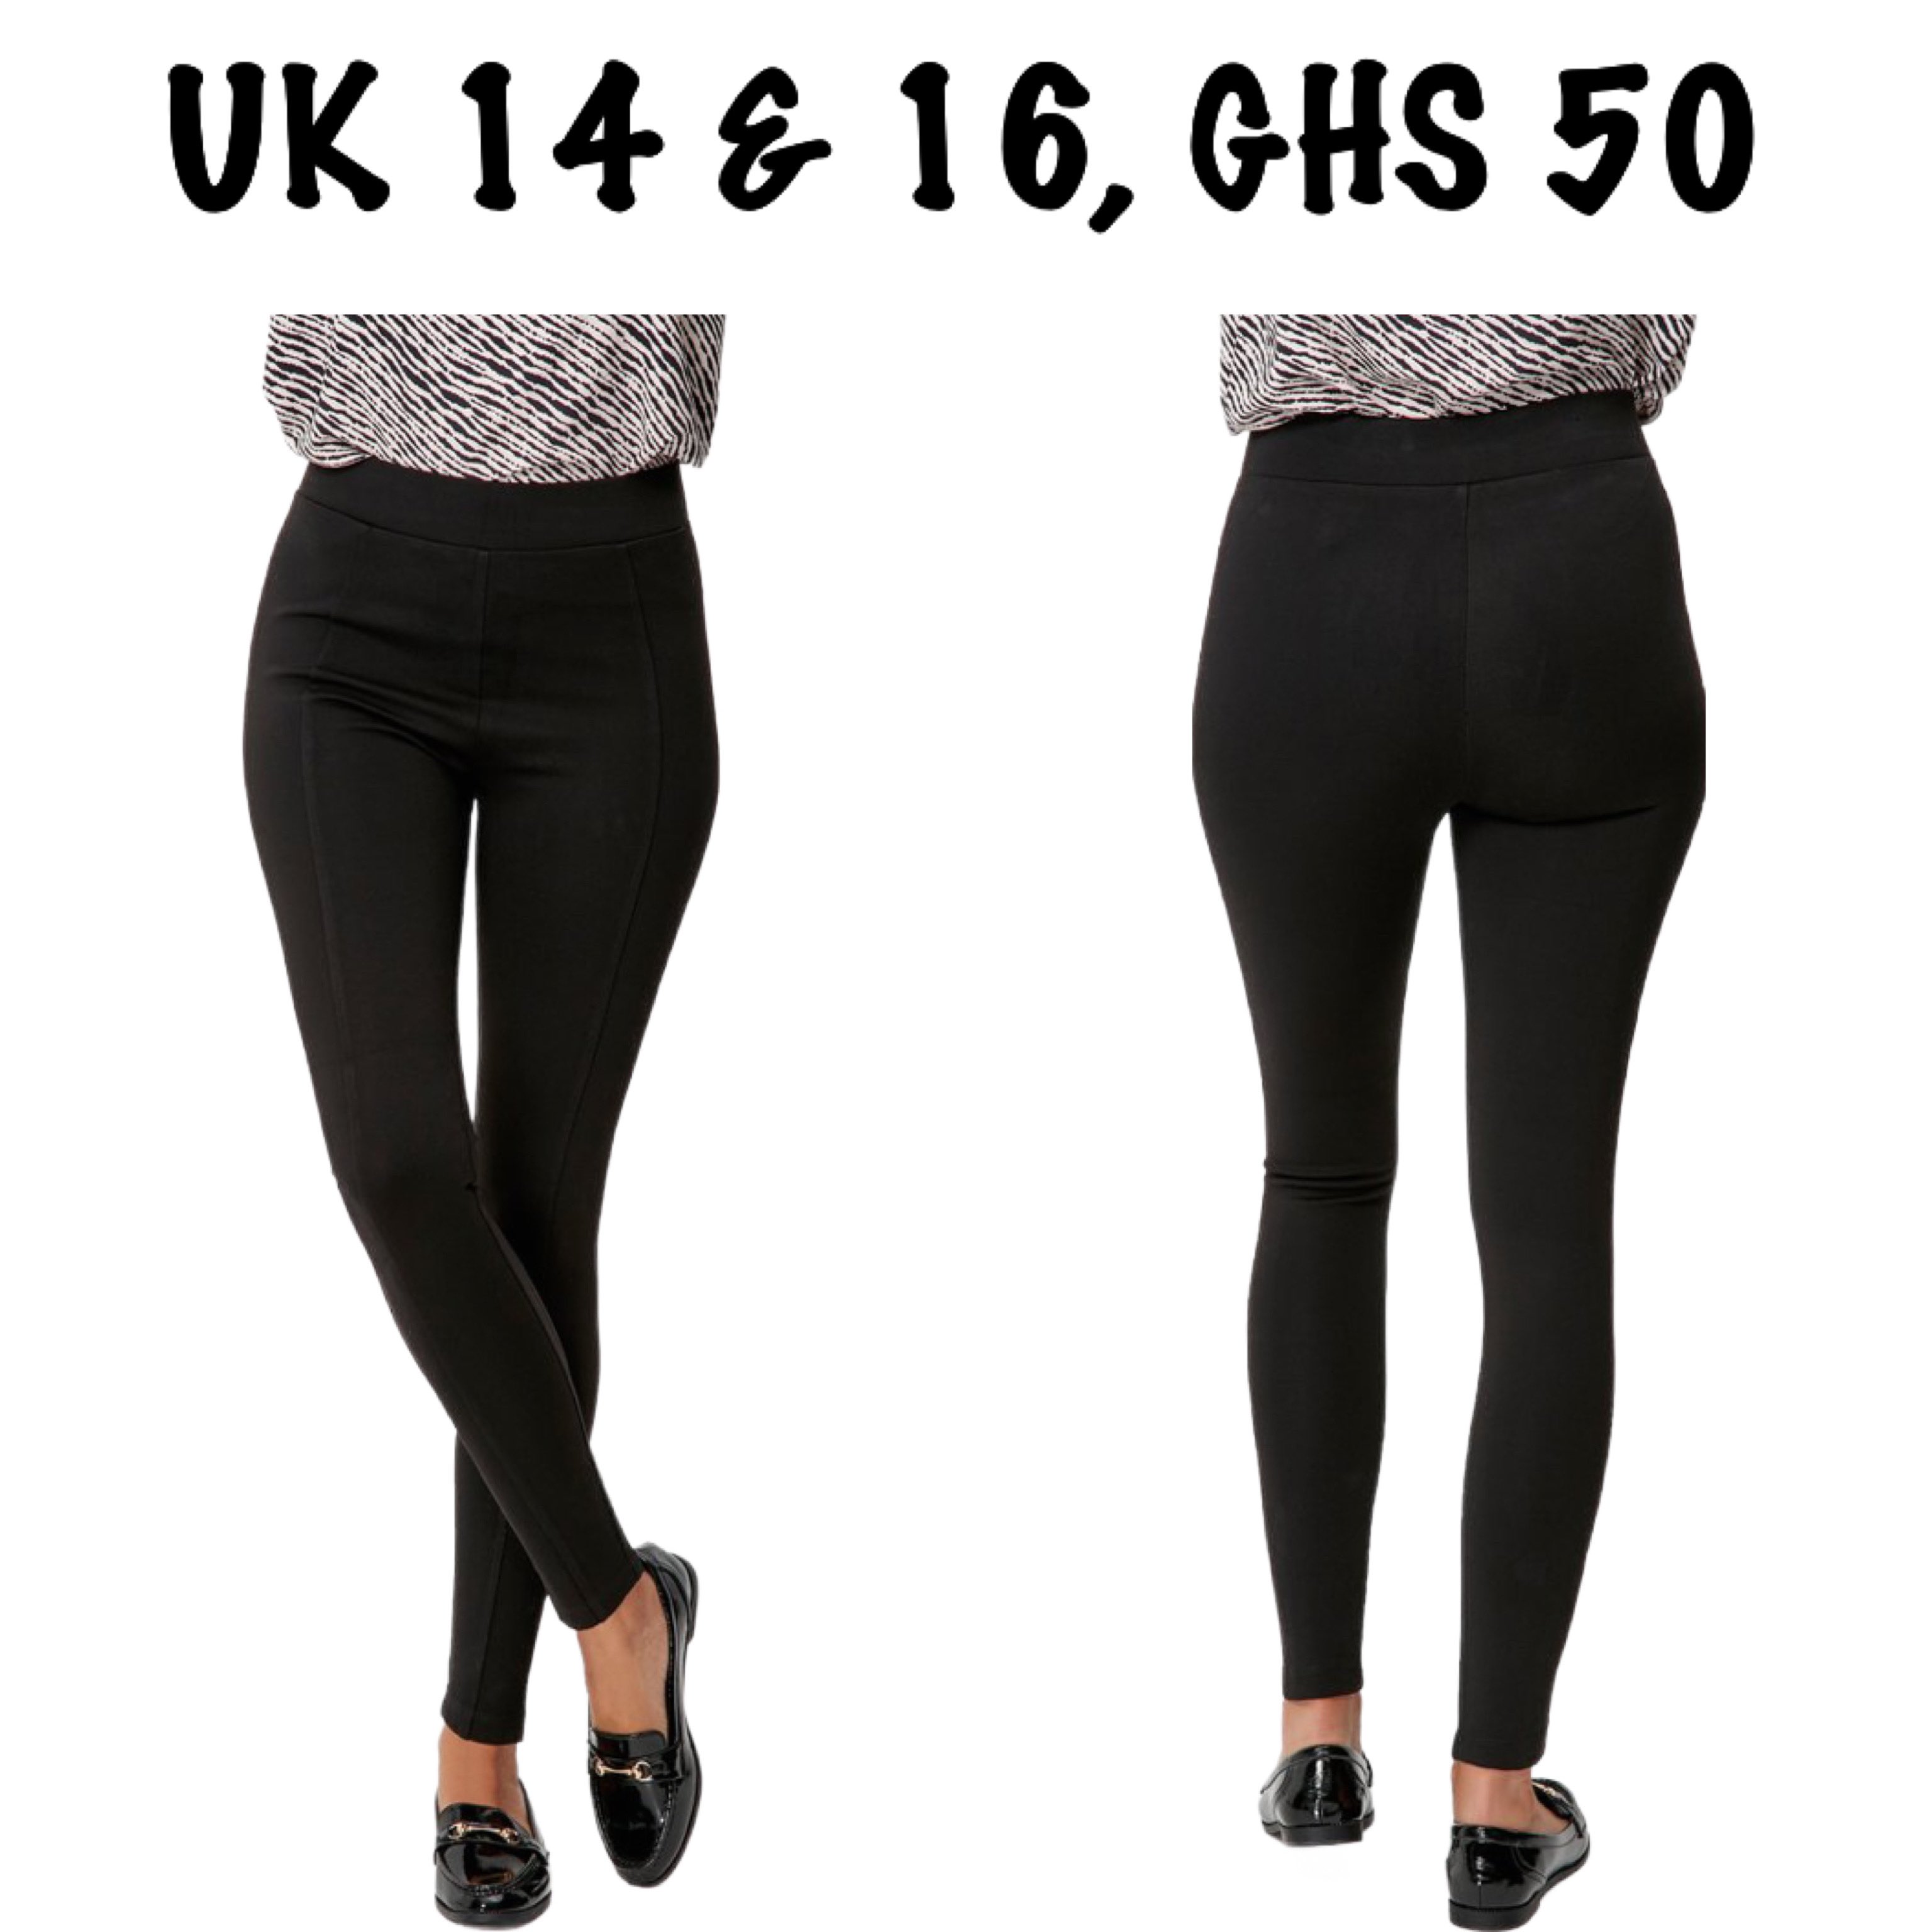 Clothing Store in Ghana on X: 1. Thick black seam leggings (Esmara) 2.  Thick black smooth leggings (Next) 3. Thick black seam leggings (M&S) 4.  Thick black smart leggings (TU)  / X